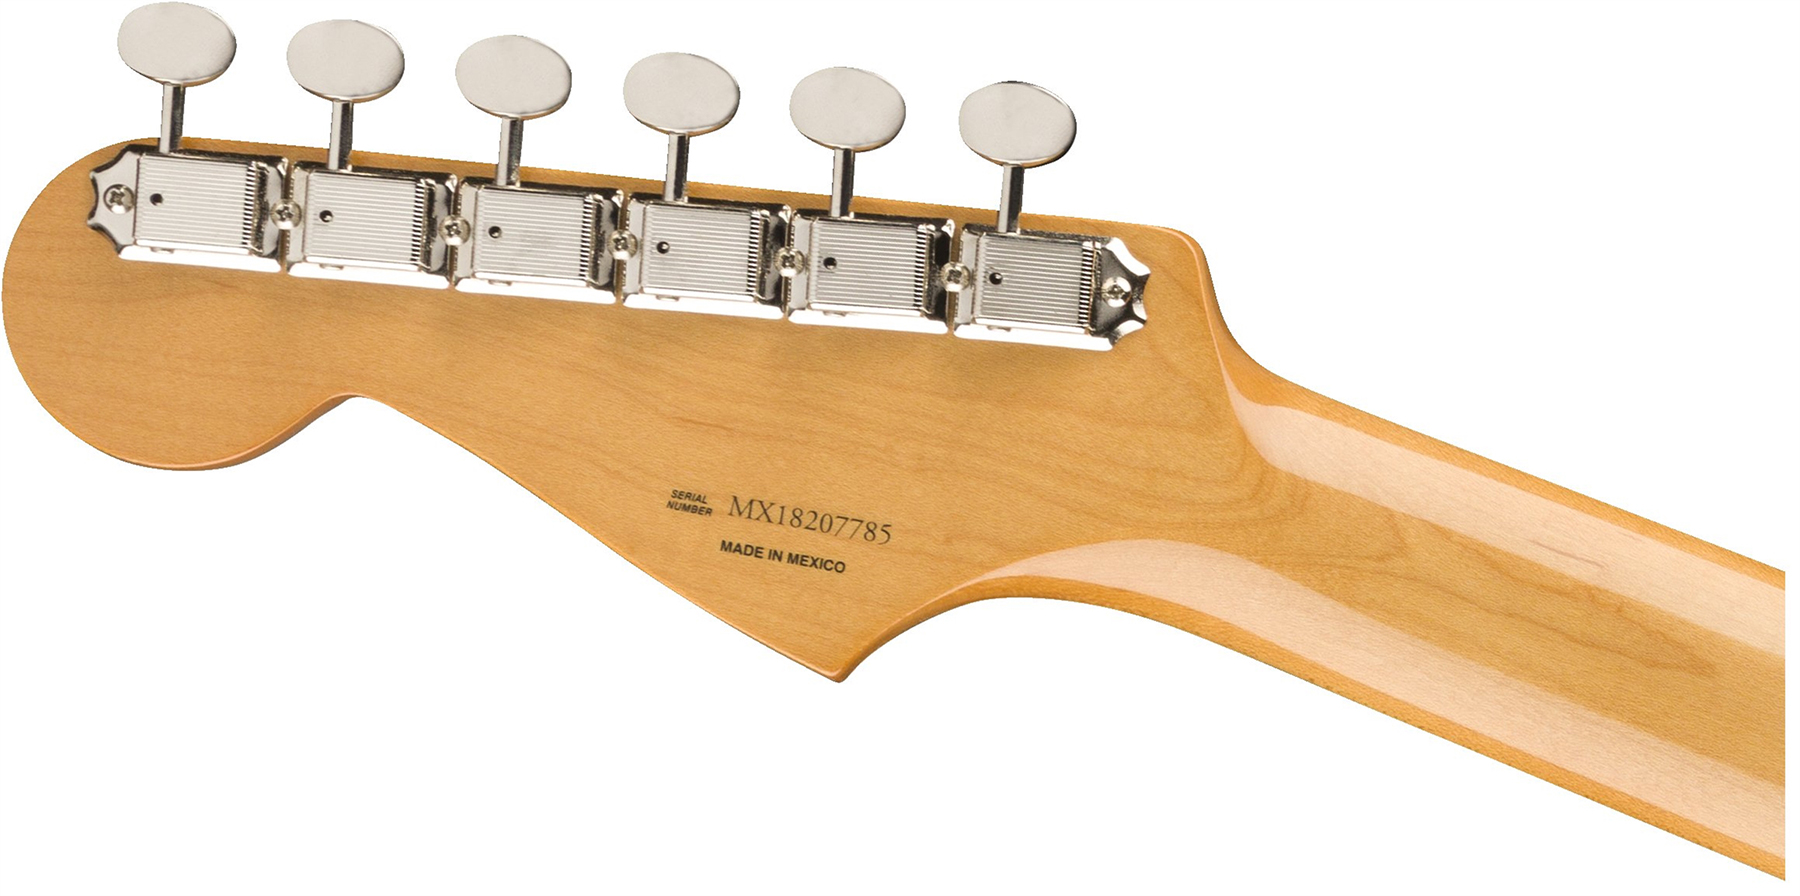 Fender Strat 60s Vintera Vintage Mex Pf - 3-color Sunburst - Str shape electric guitar - Variation 3